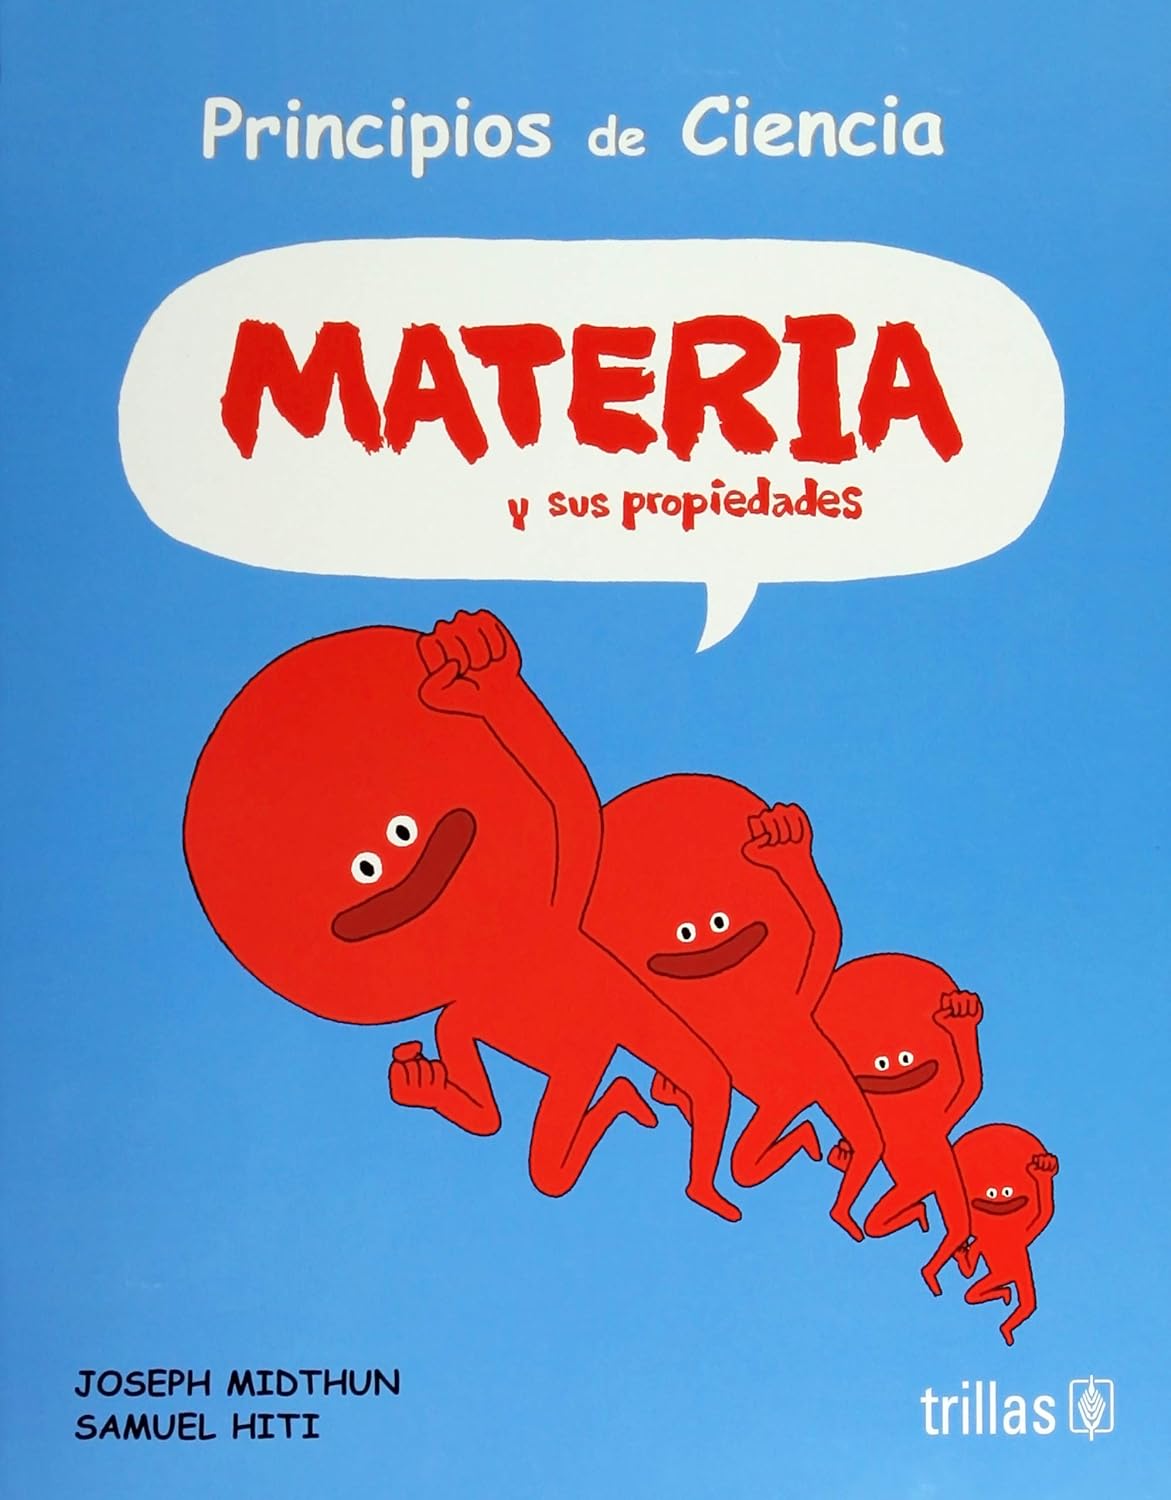 Principios de Ciencia: Materia y sus propiedades